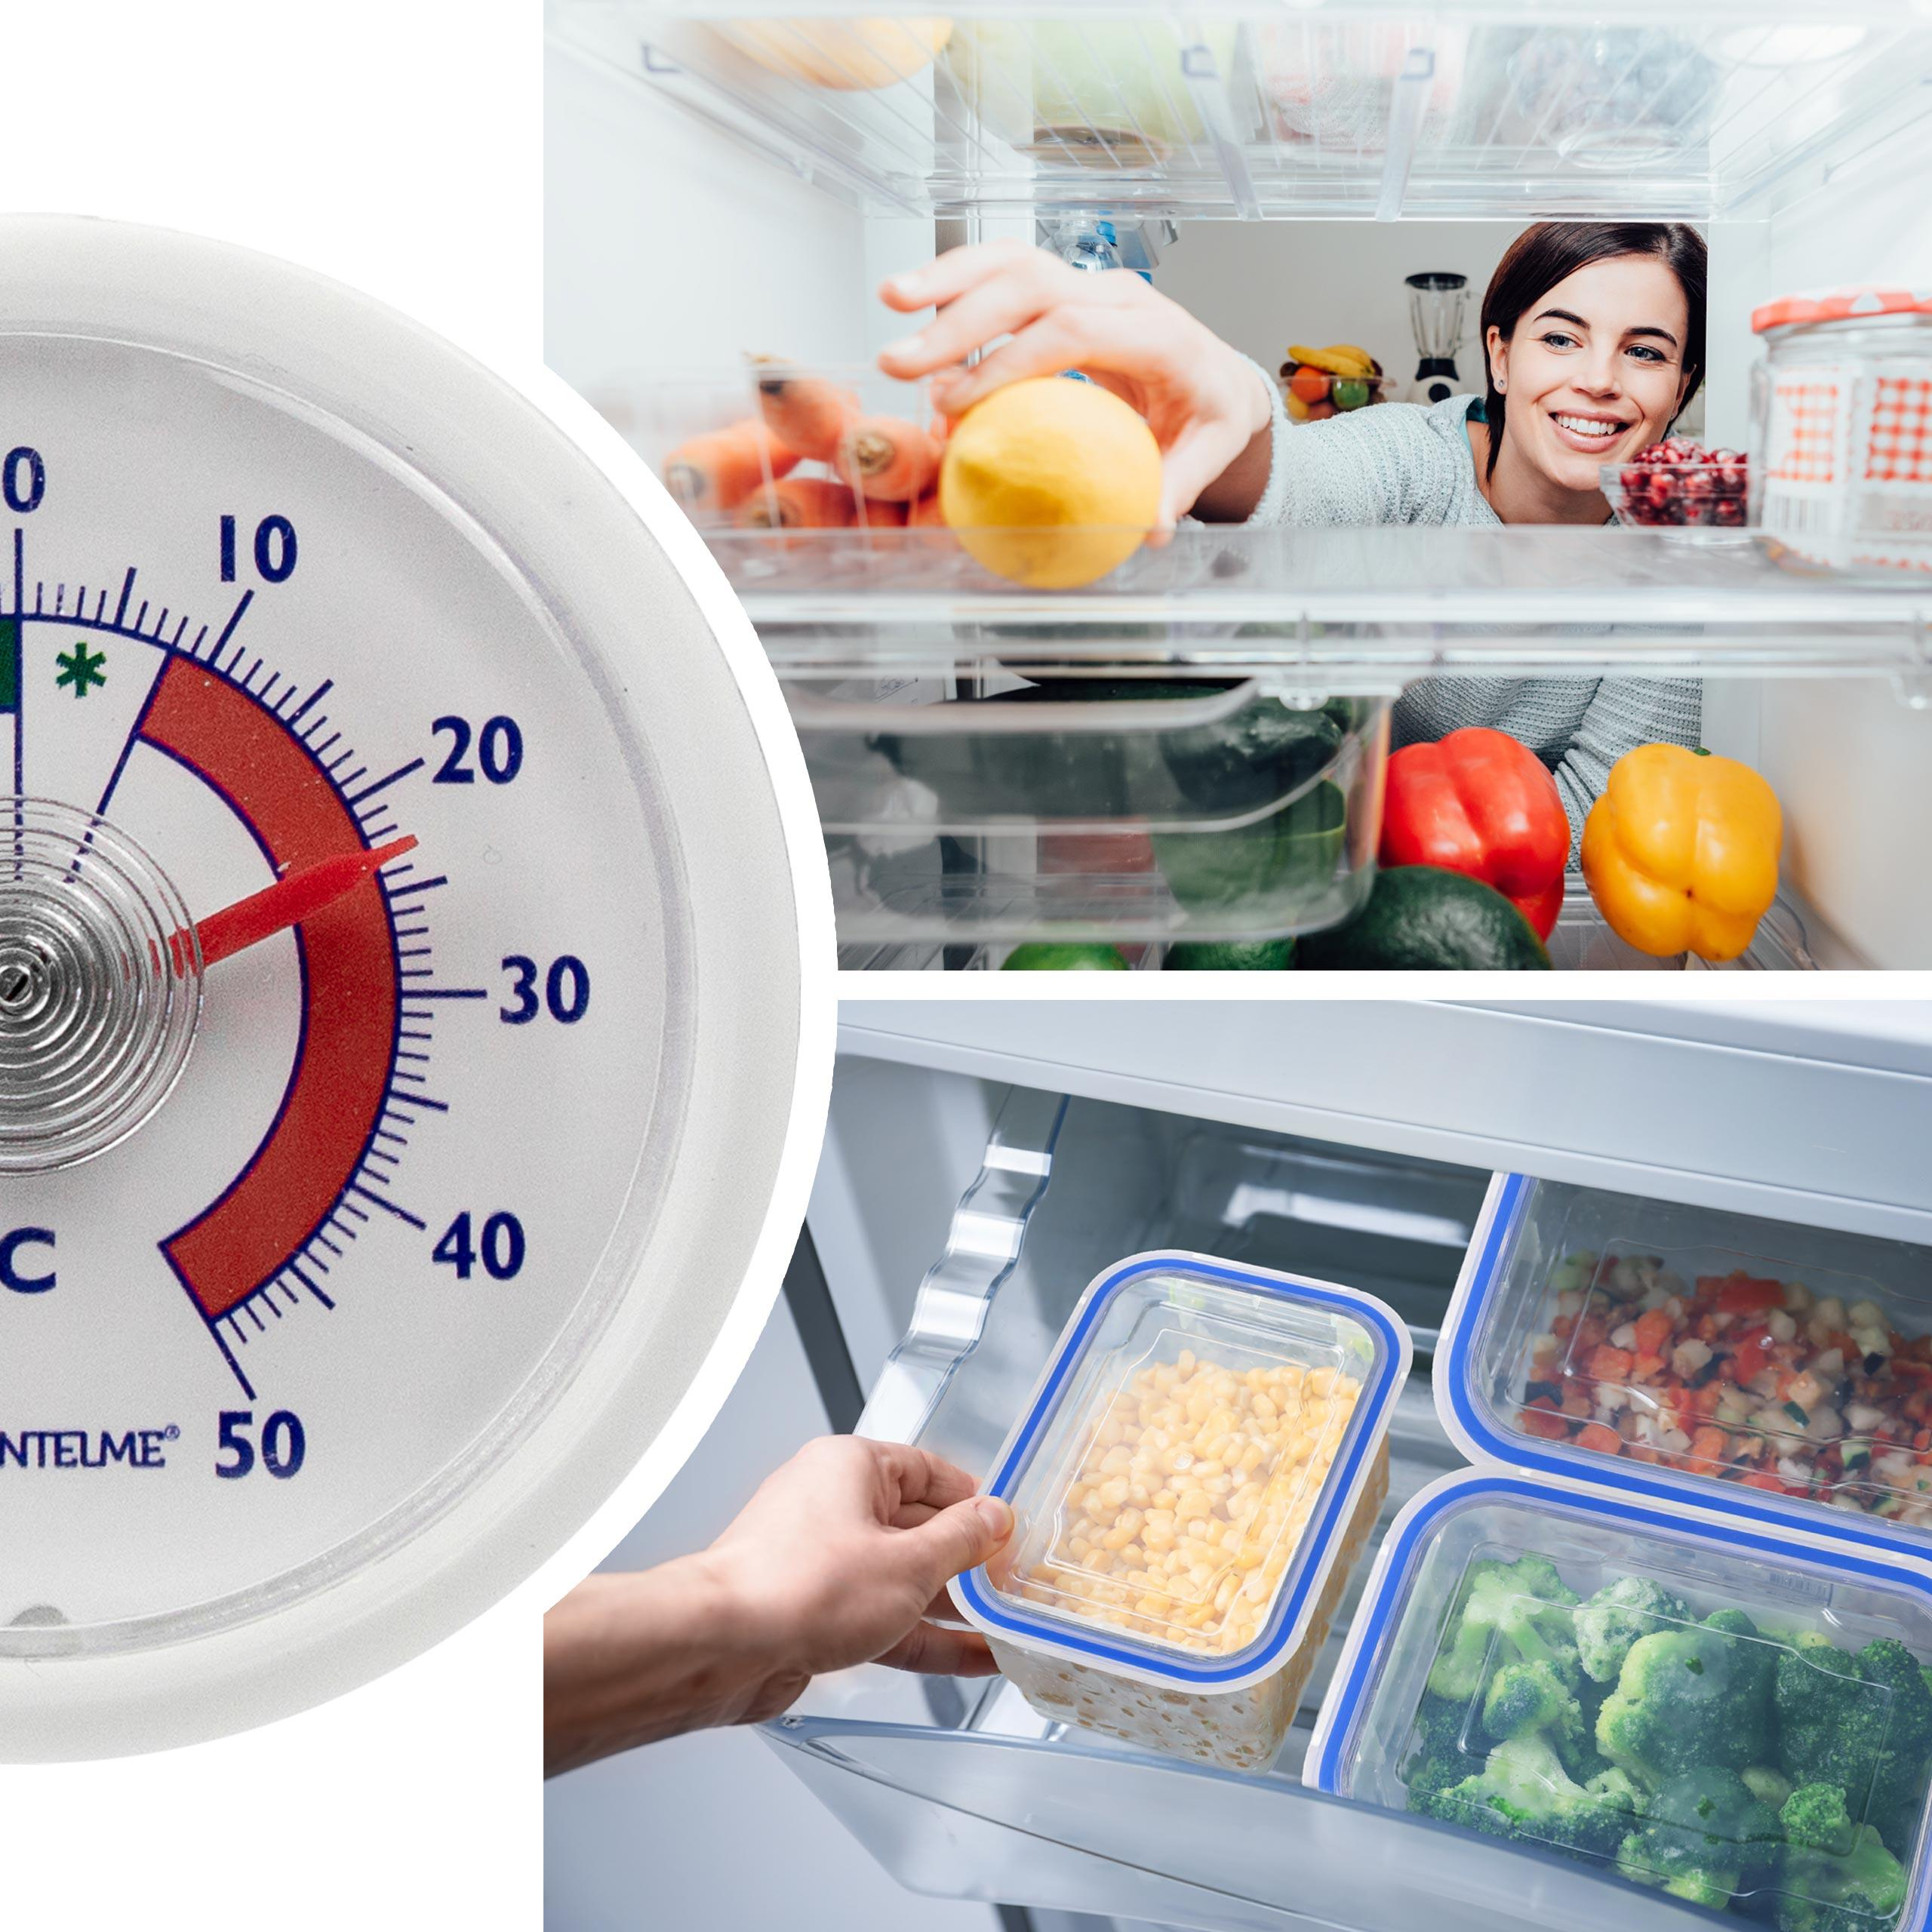 LANTELME 5 Küchenhelfer-Set Stück Kühlschrankthermometer